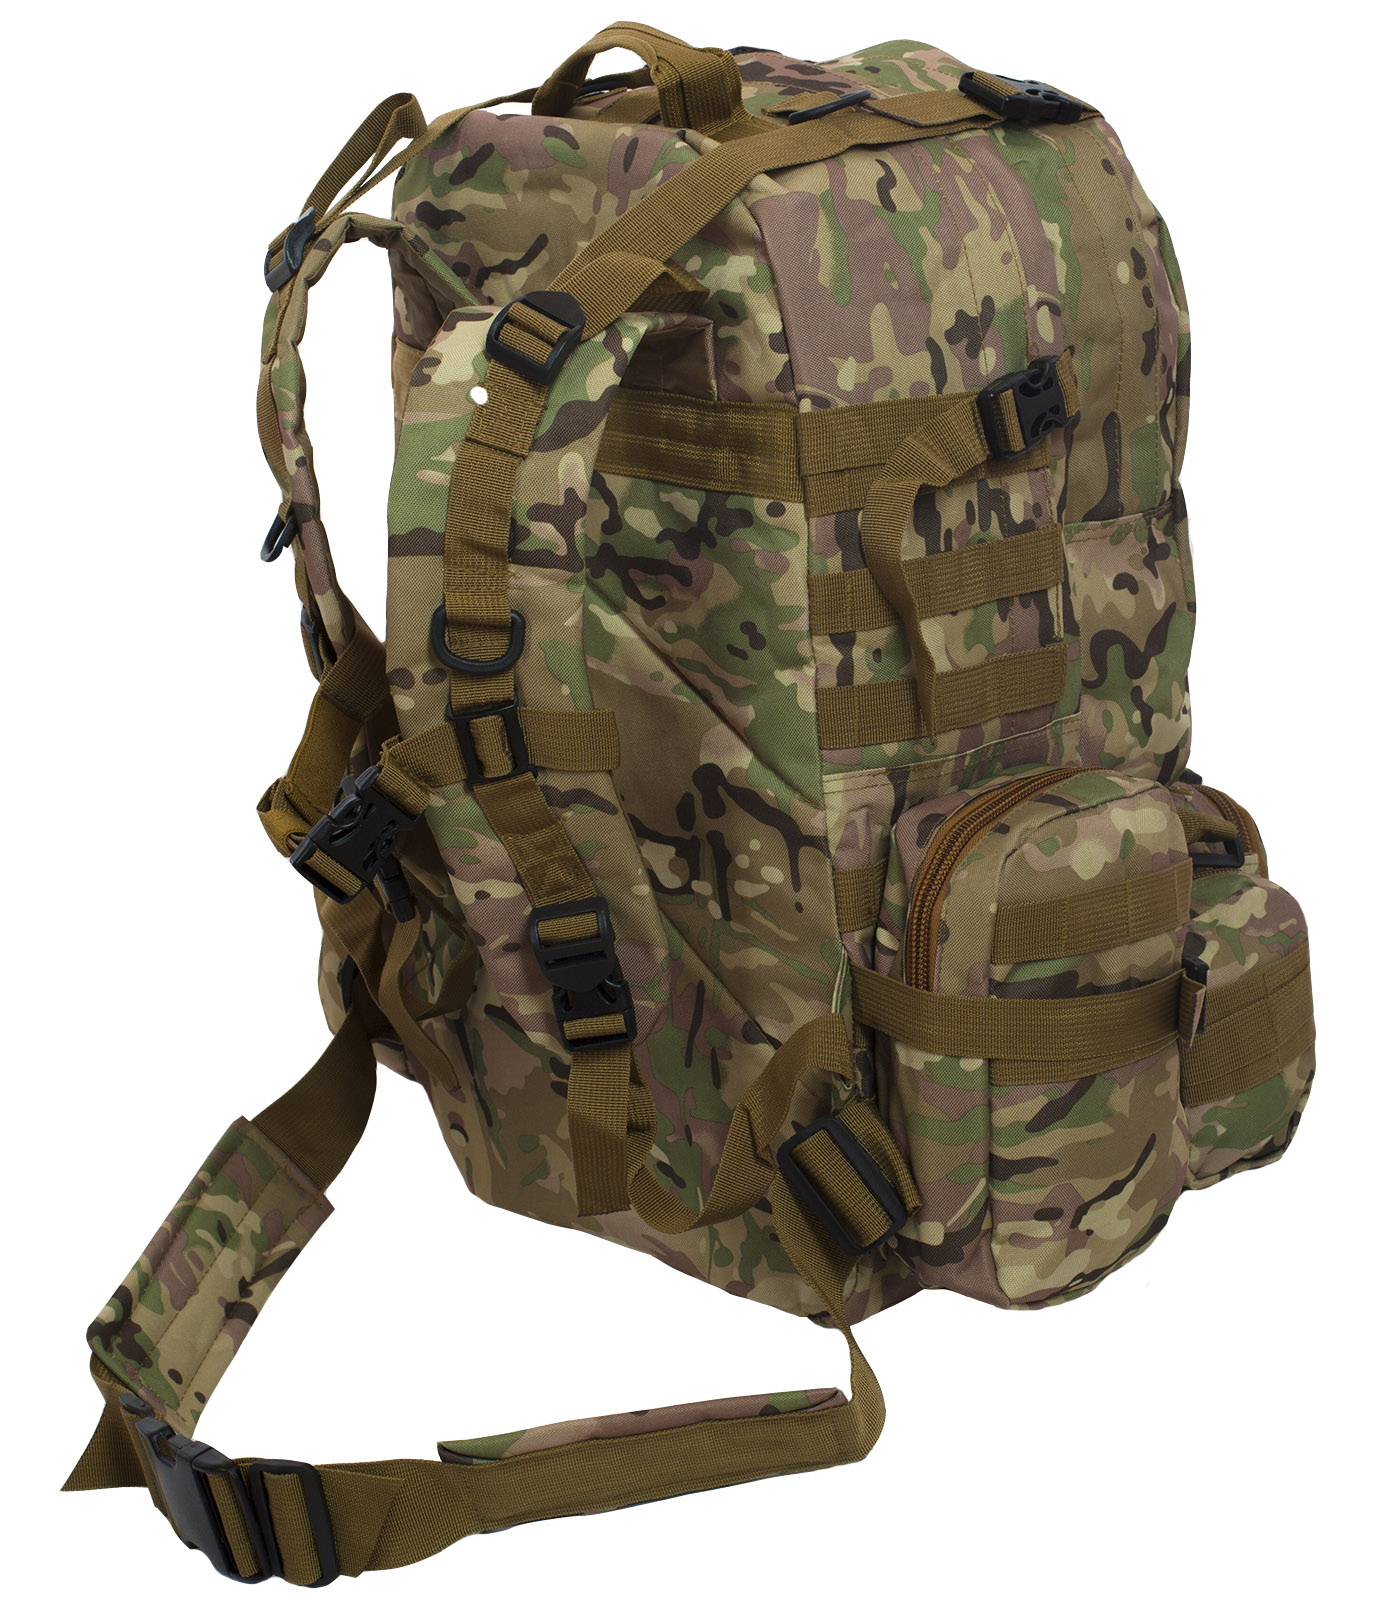 Функциональный армейский рюкзак с нашивкой ДПС 